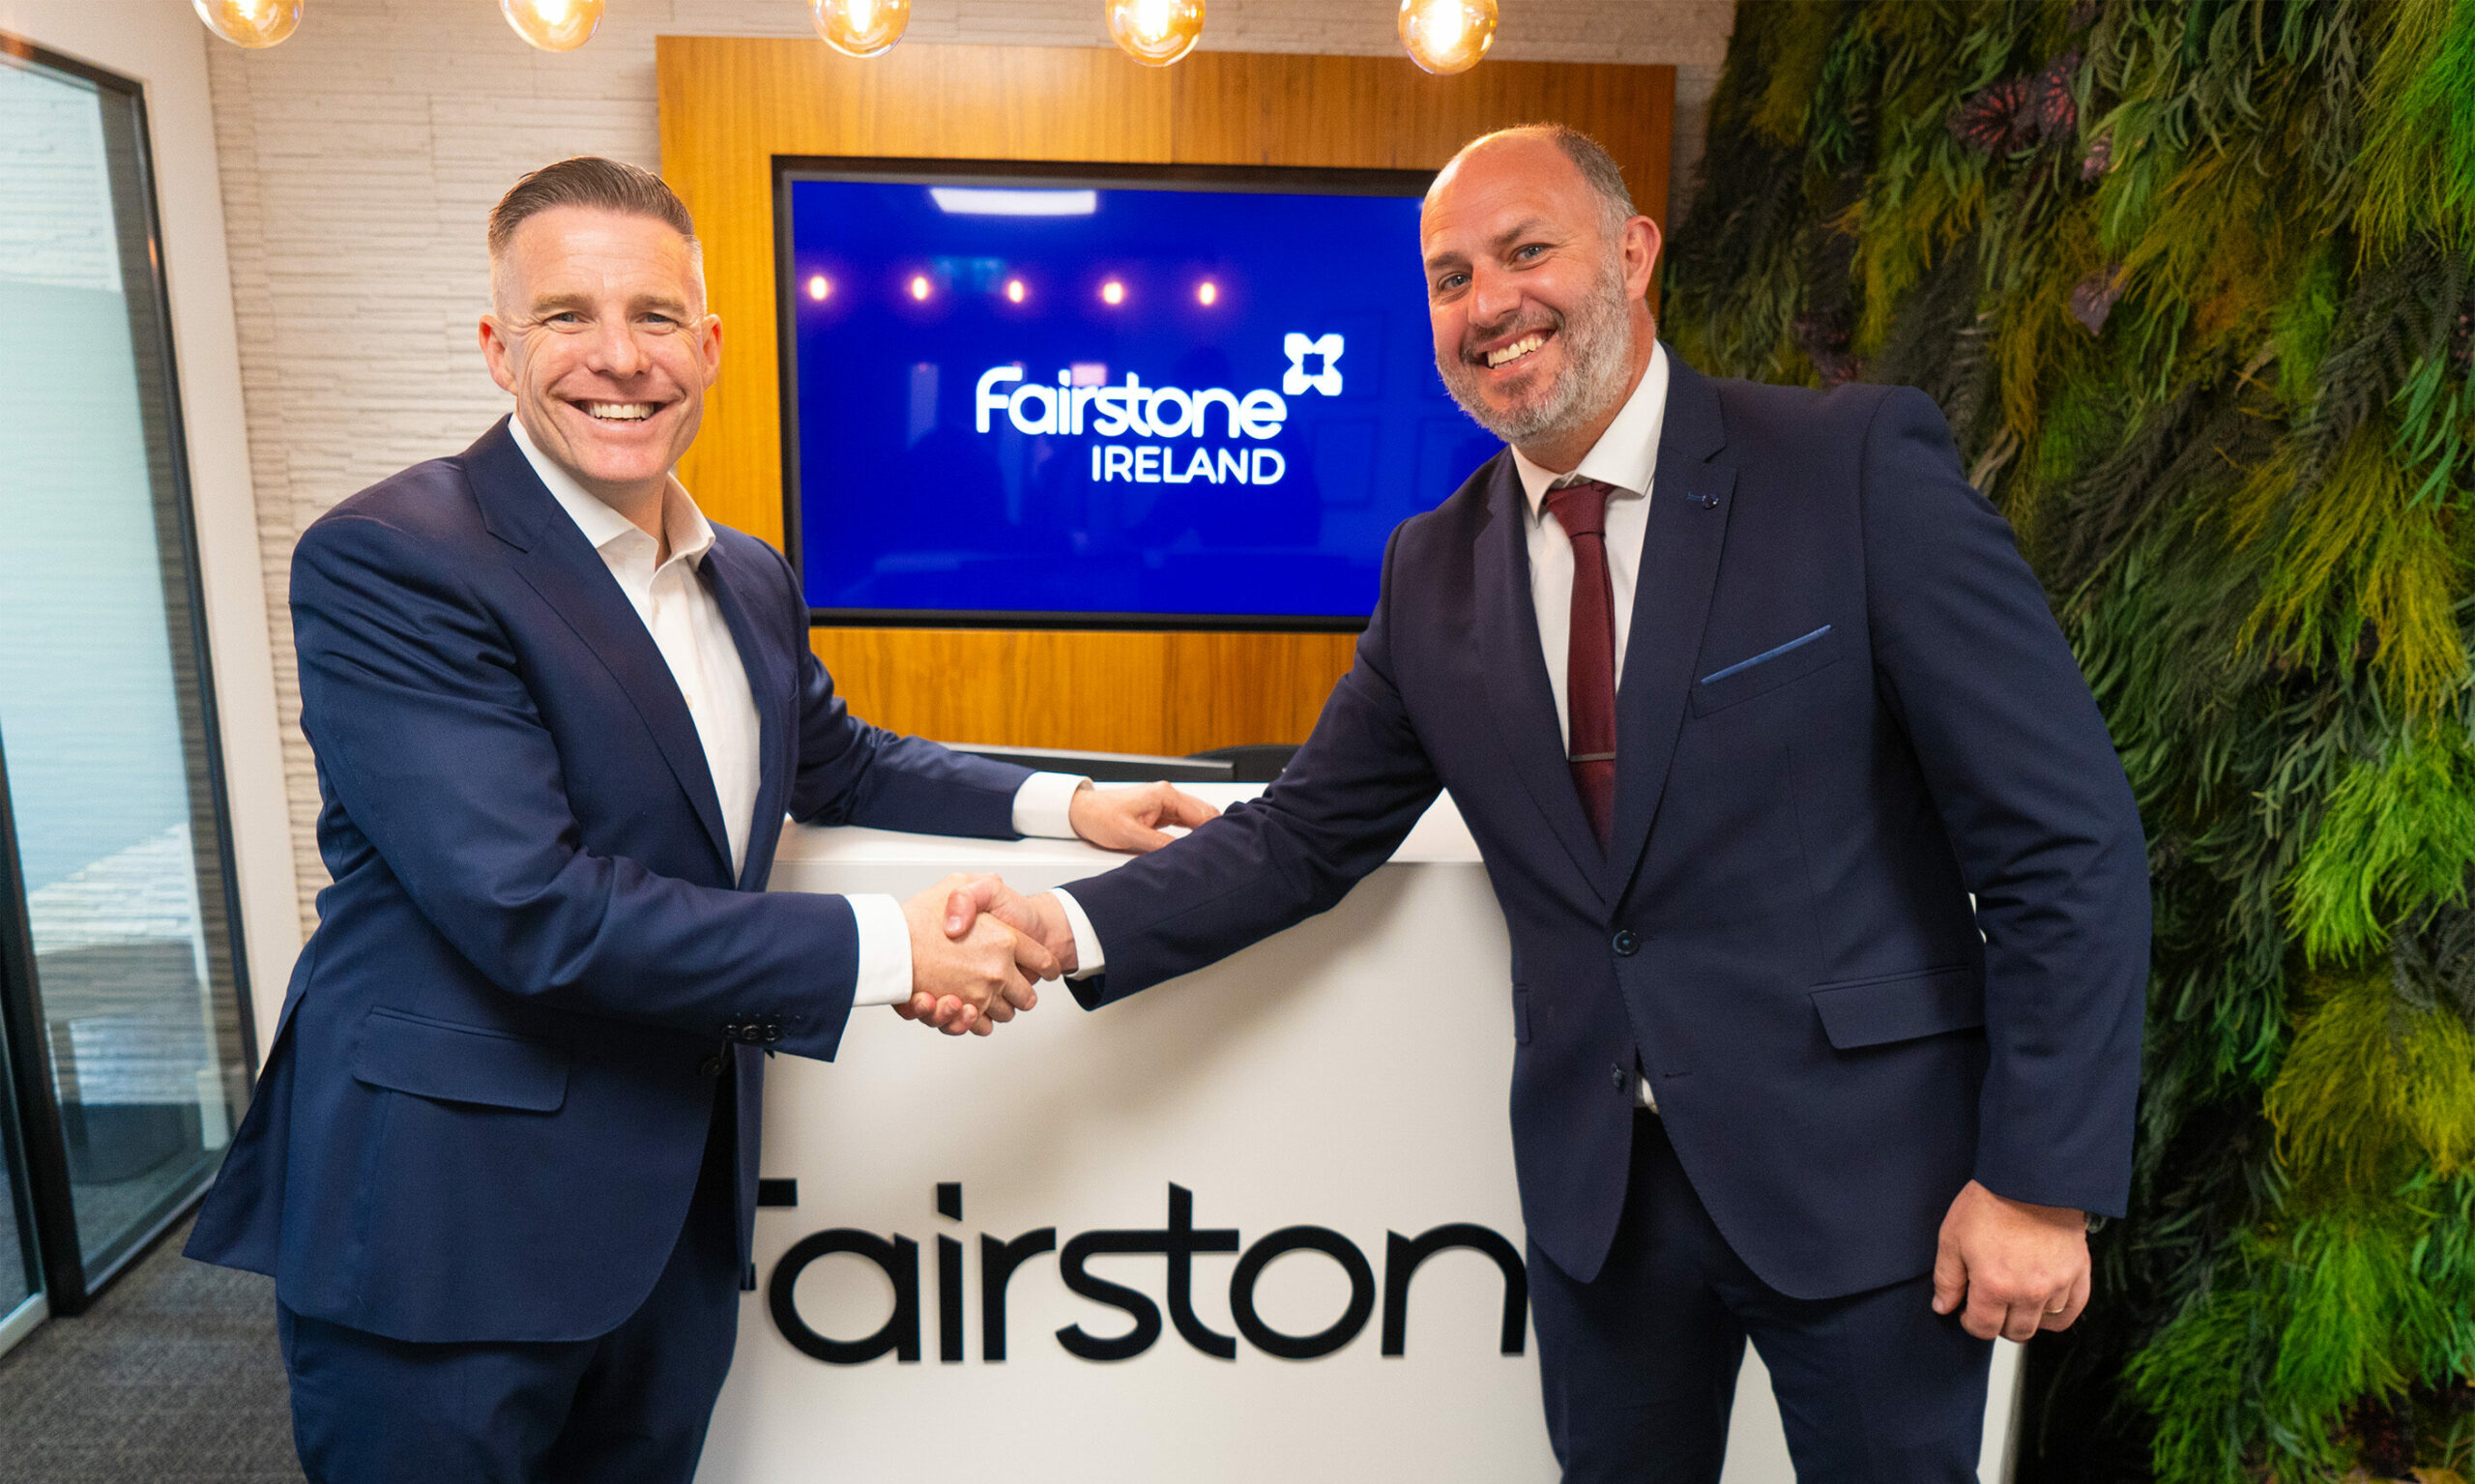 Fairstone Ireland CEO Paul Merriman shaking hands with Cleere Life & Pensions Director Gearoid Cleere